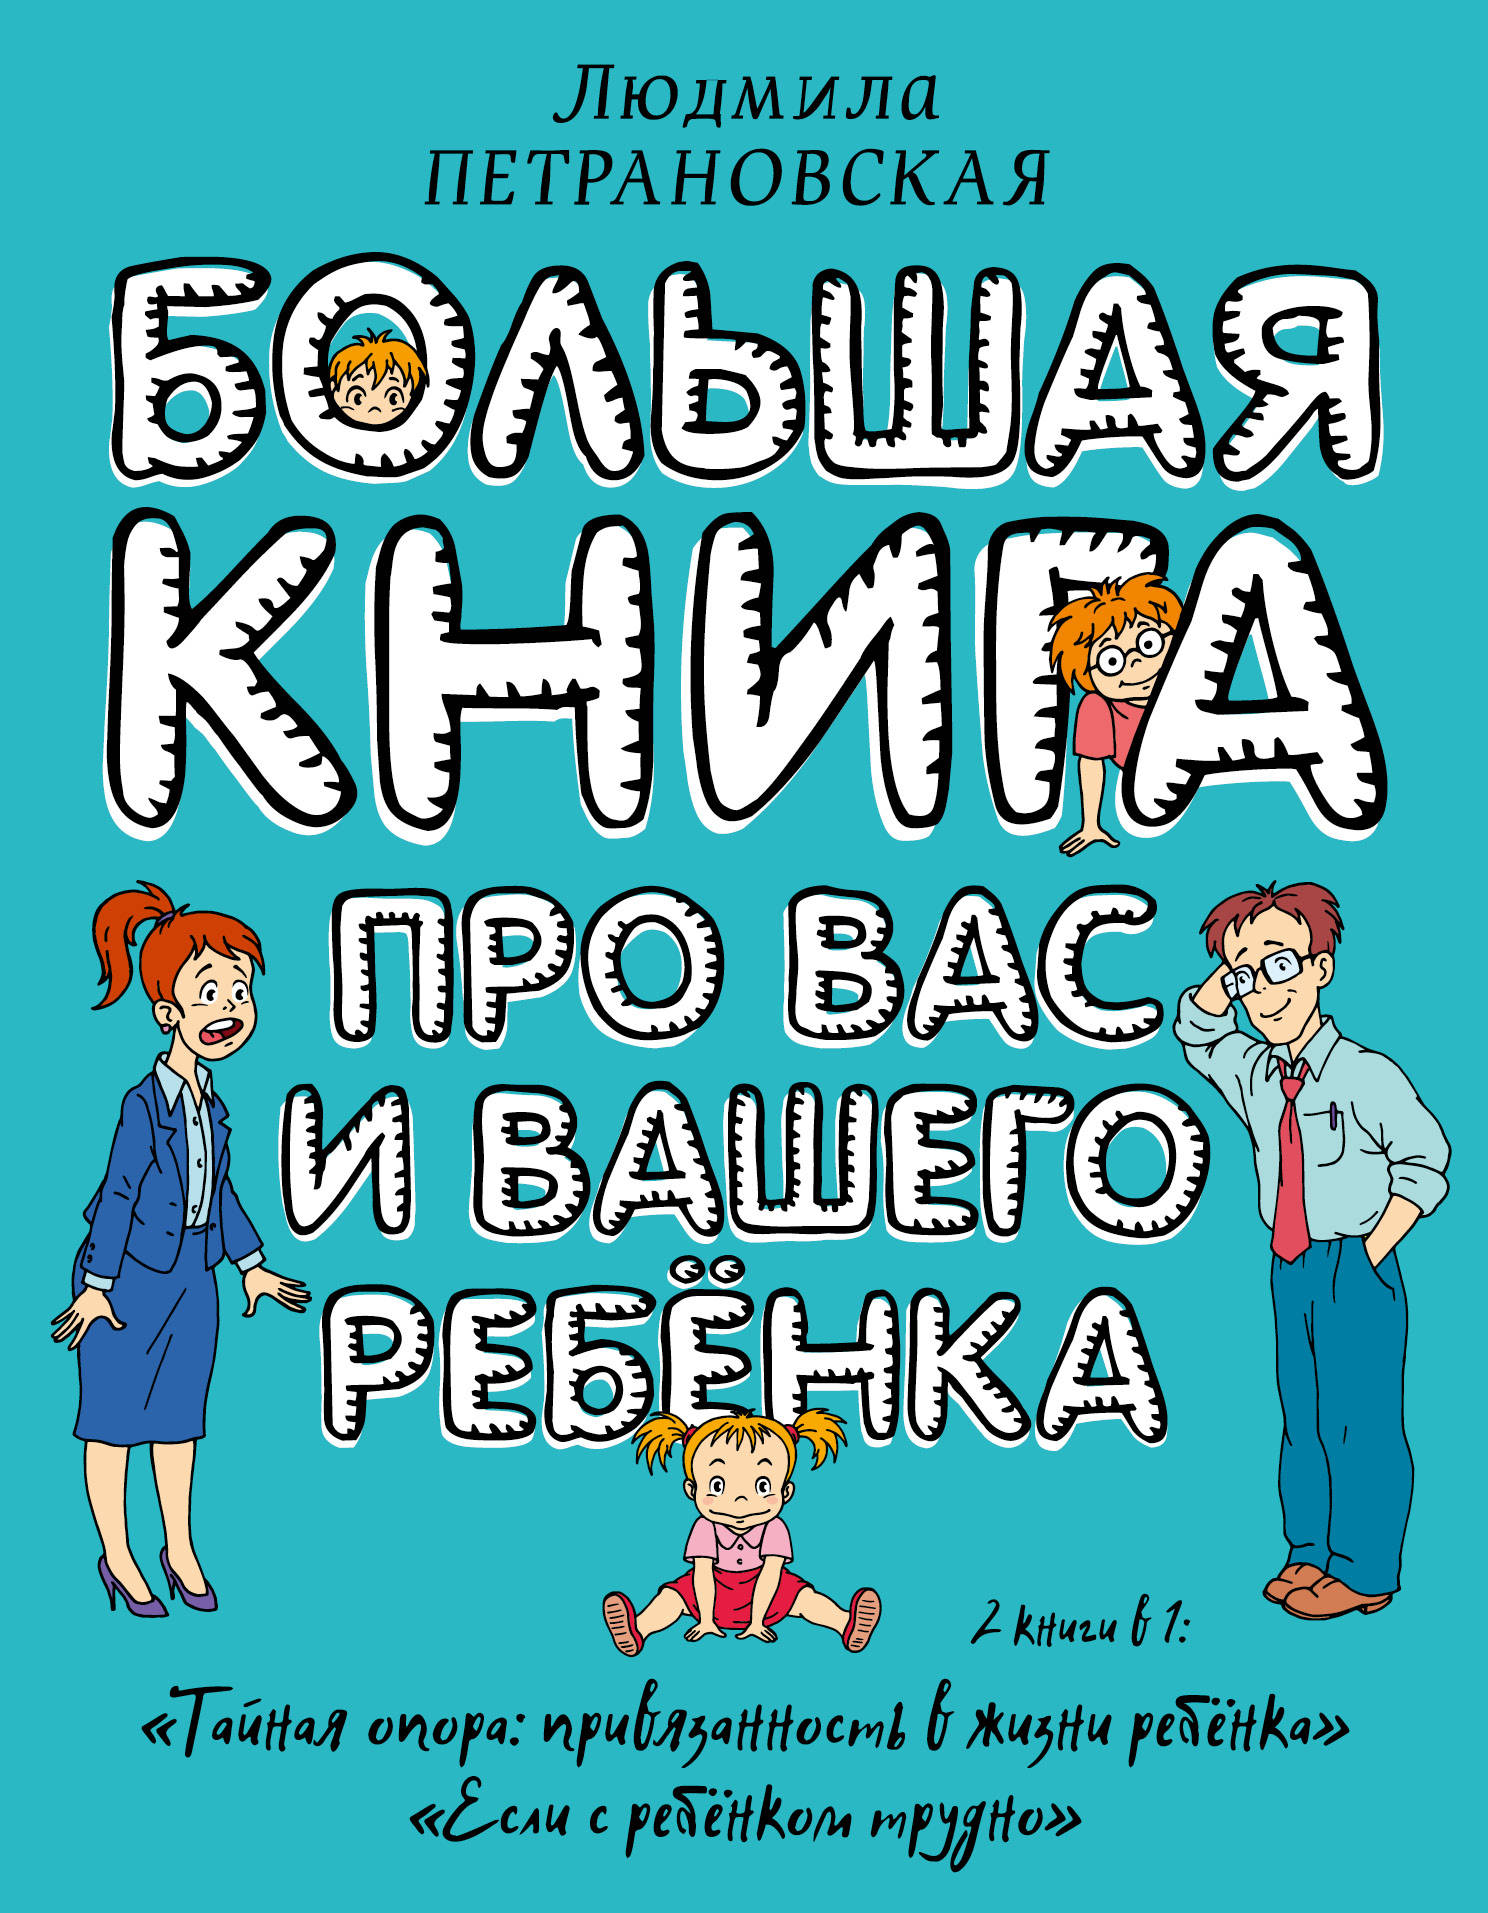 Book “Большая книга про вас и вашего ребёнка” by Людмила Петрановская